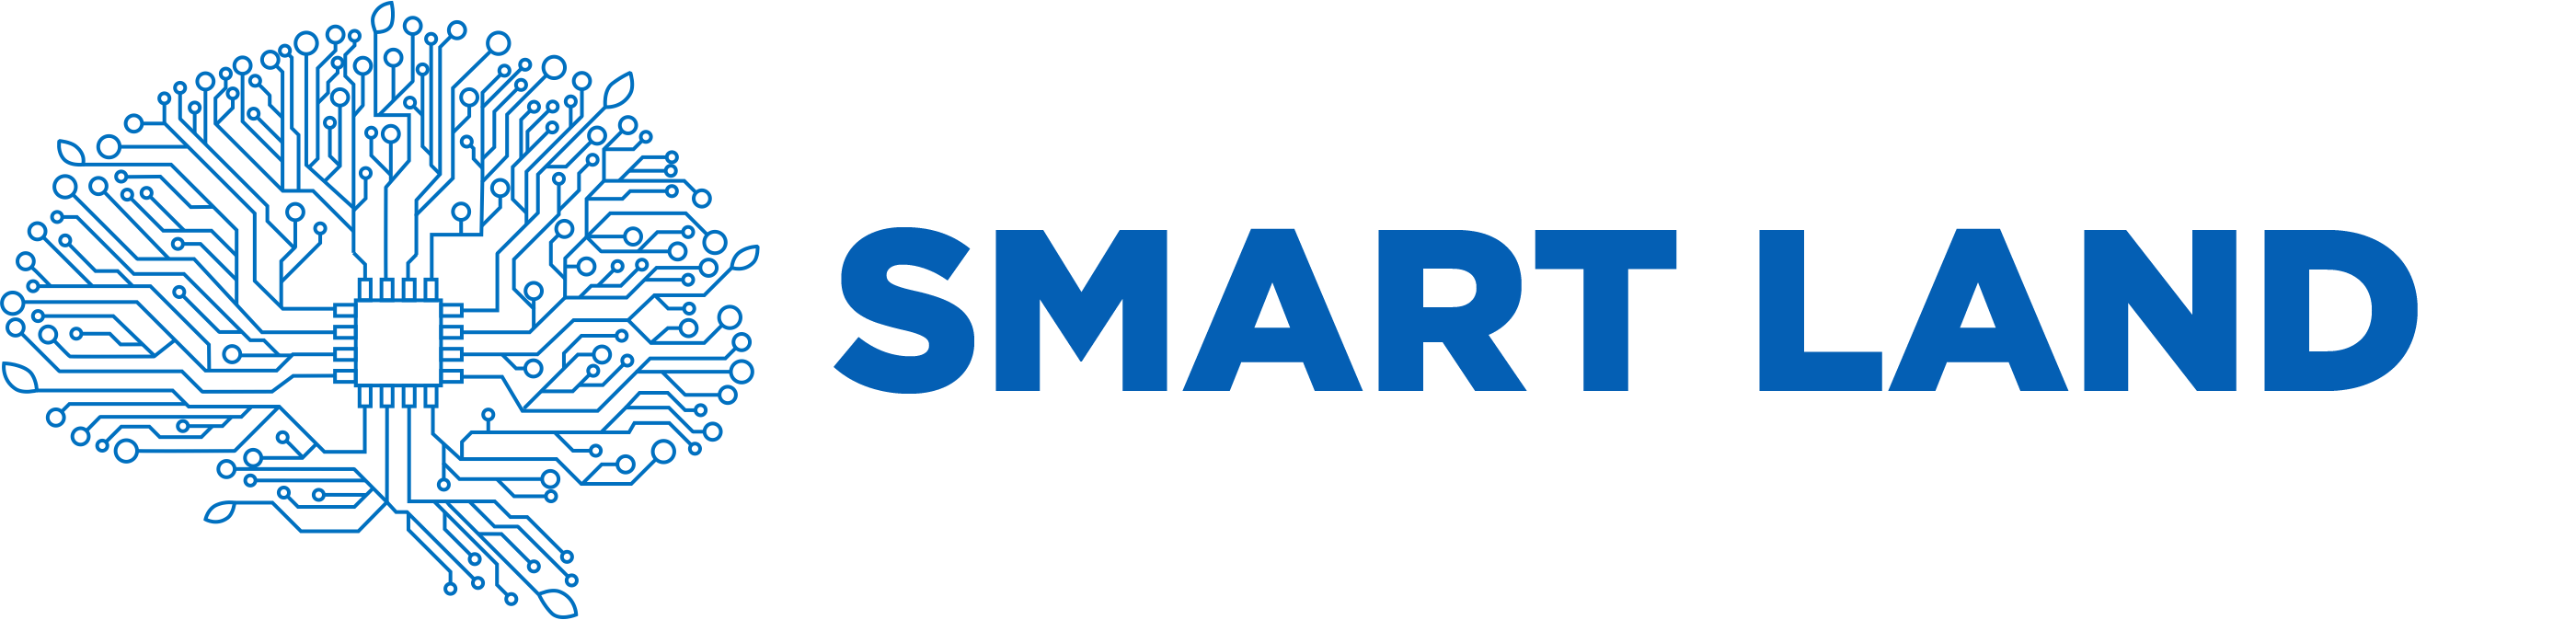 logo smartland